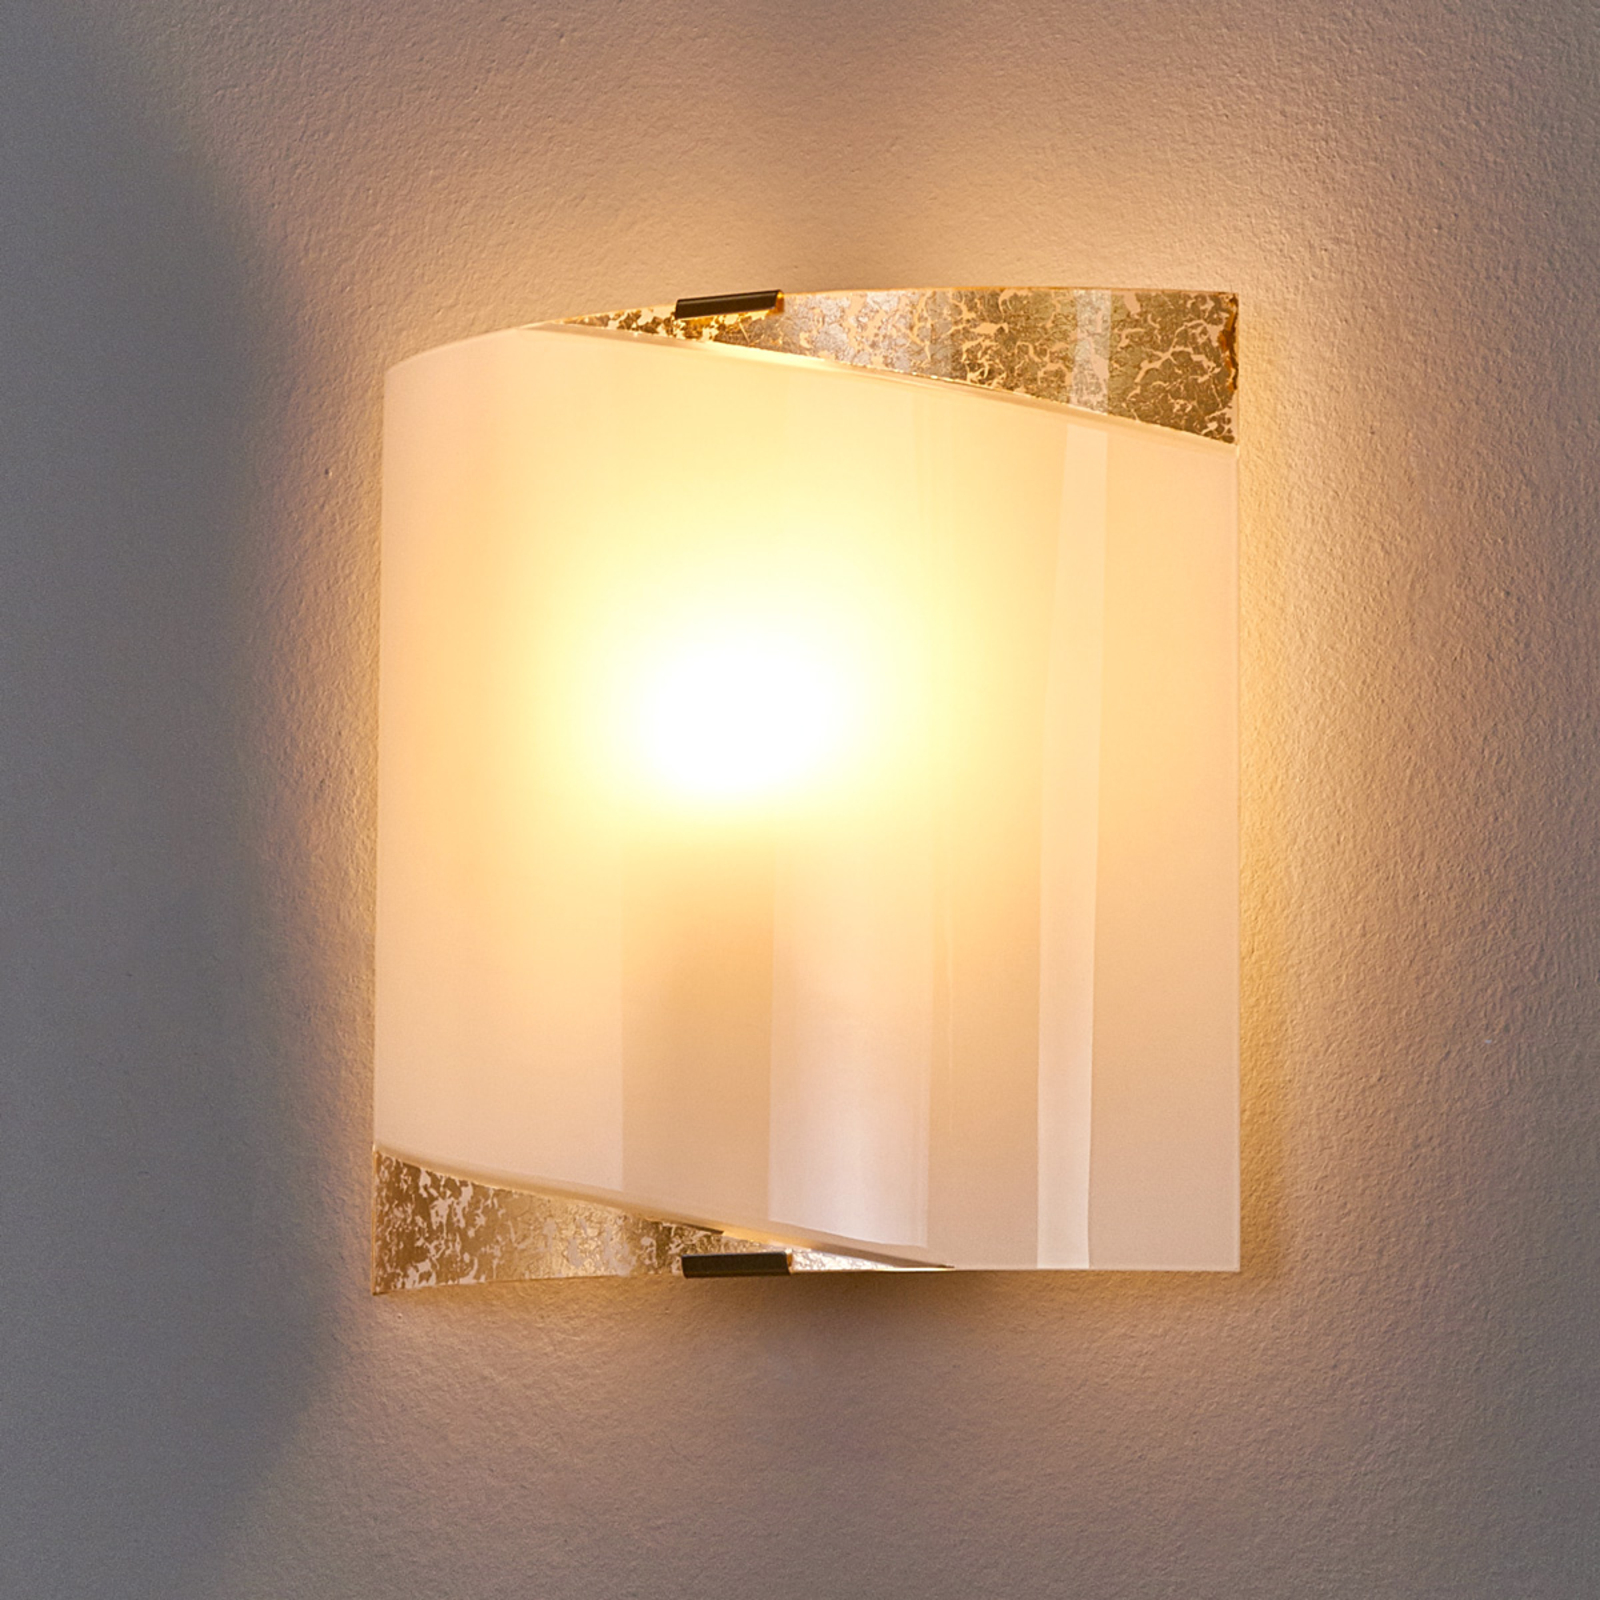 Beatrice - lampada da parete con applicazioni oro